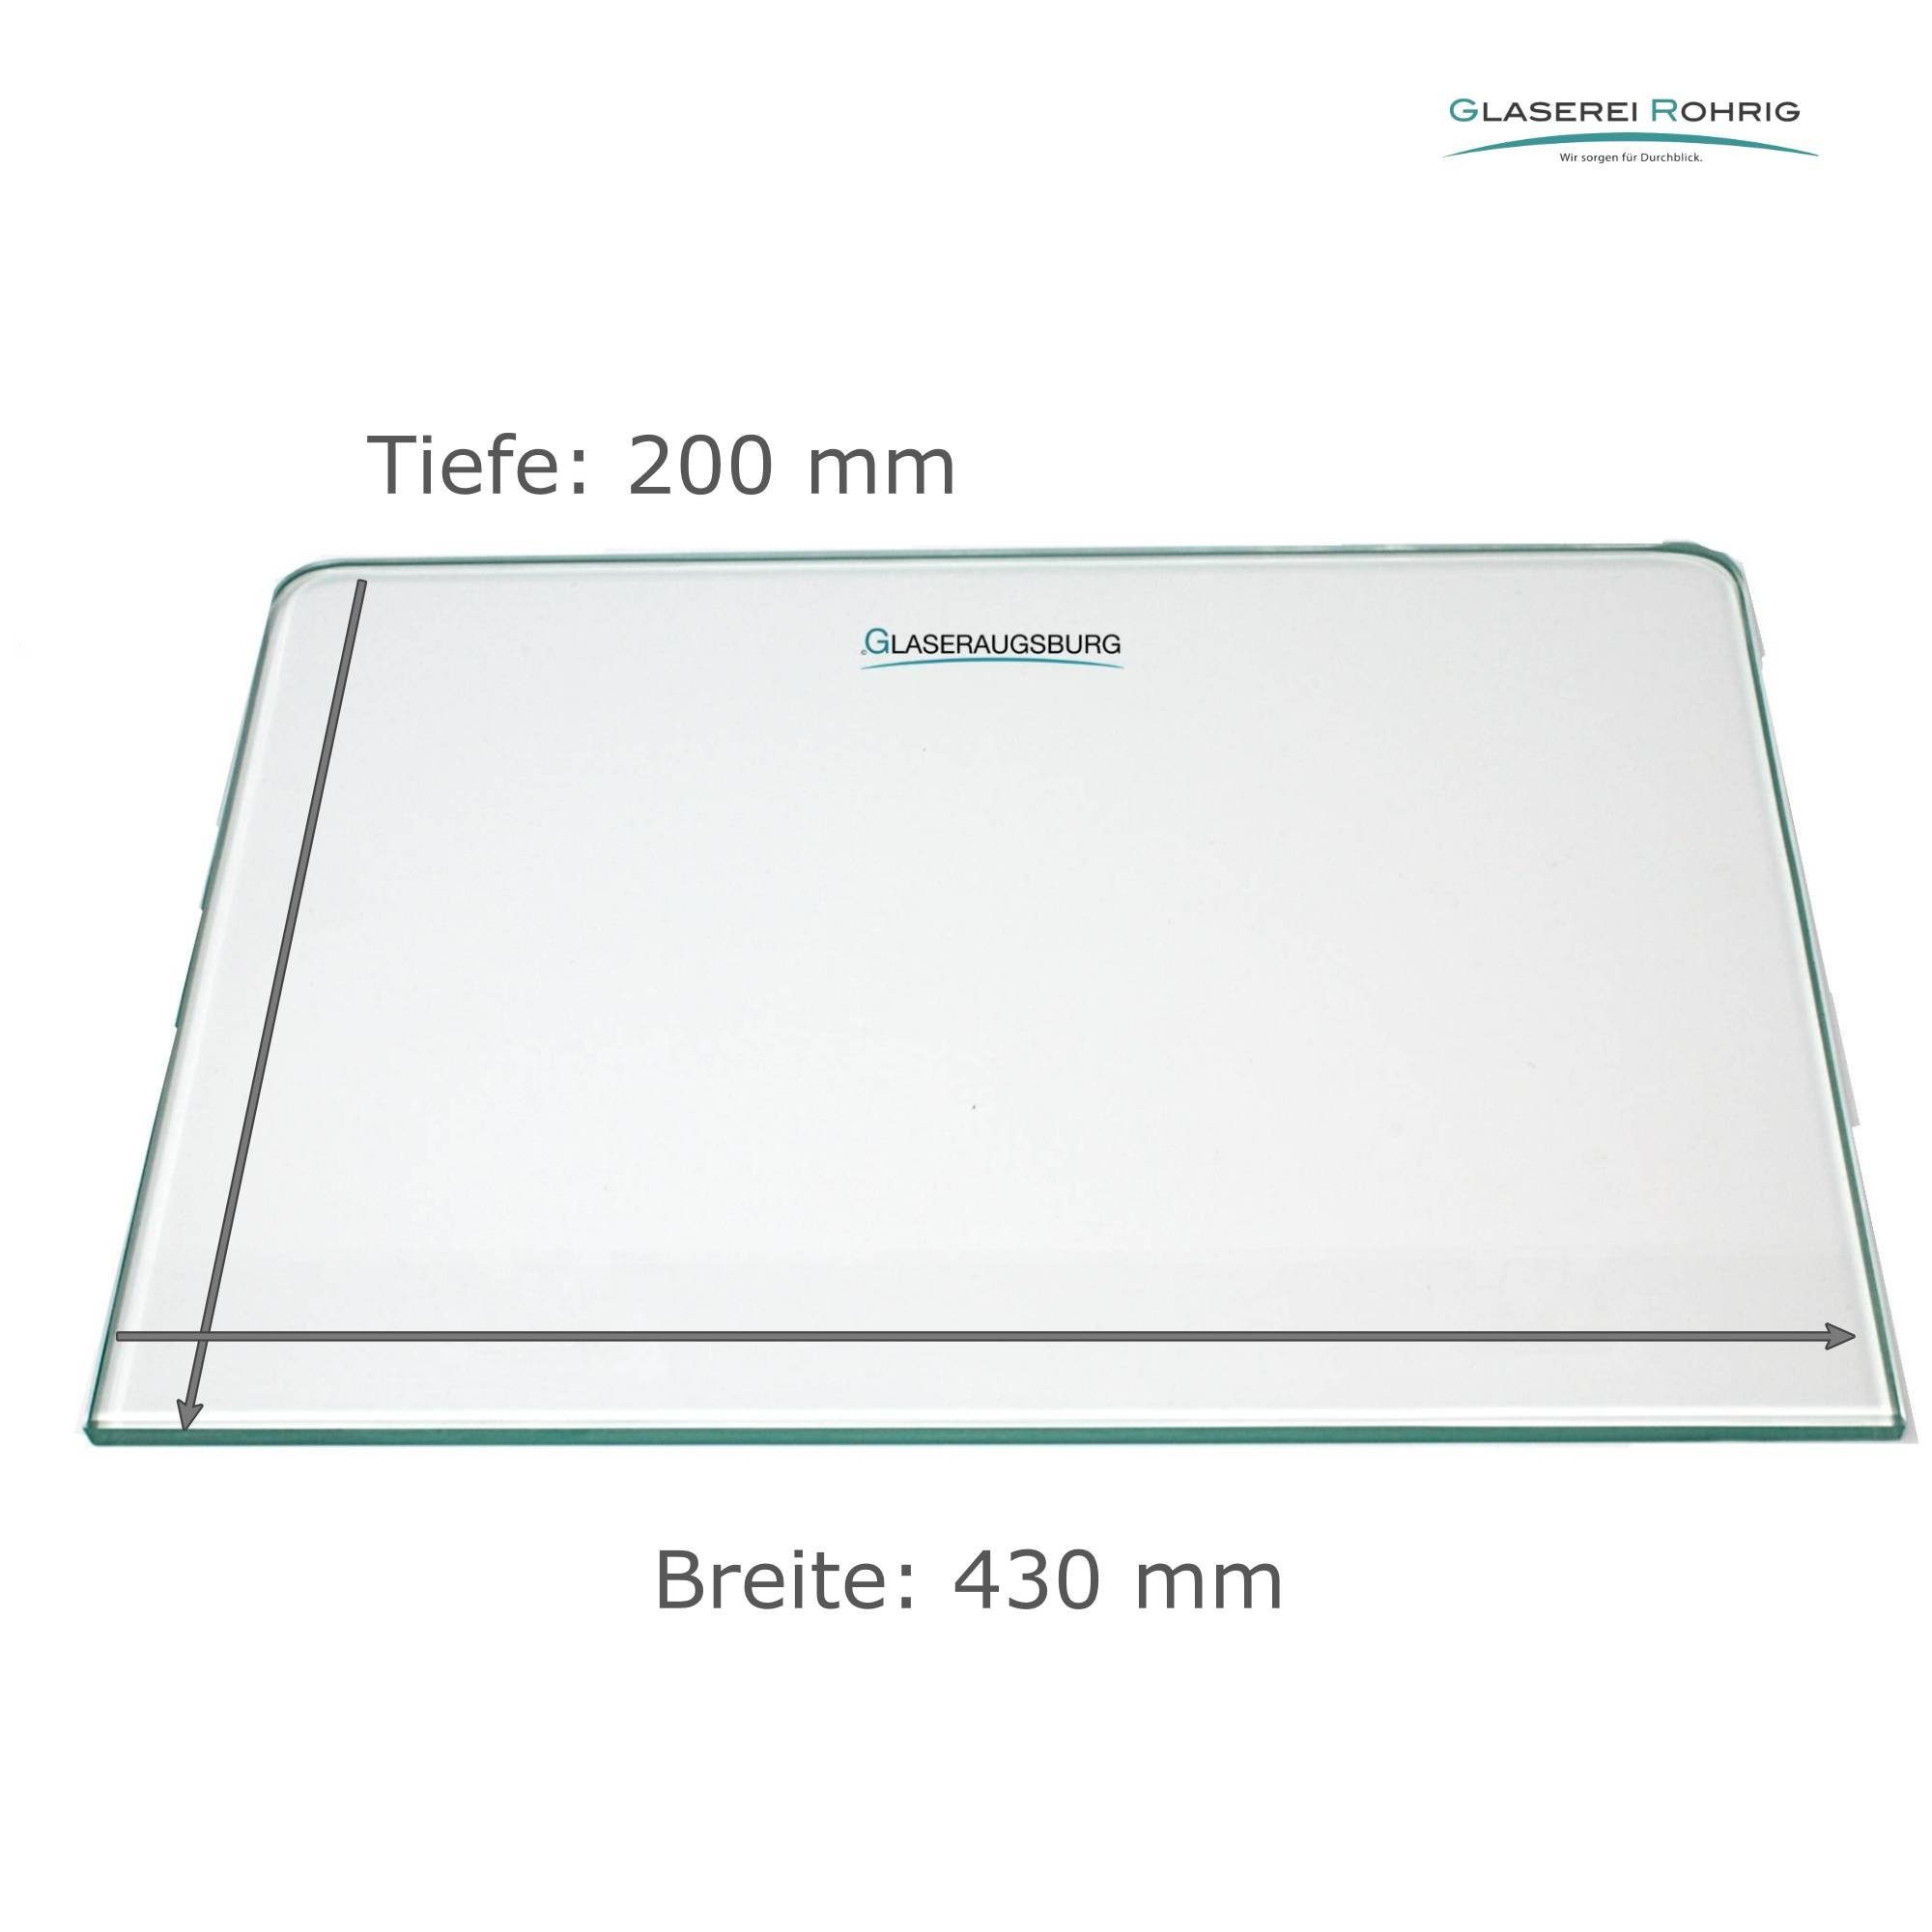 EUR/qm) Klarglas - Rundecken Viele Kühlschrank 2 - - (89,96 Maße! 4 mm Glaserei Rohrig Einlegeboden